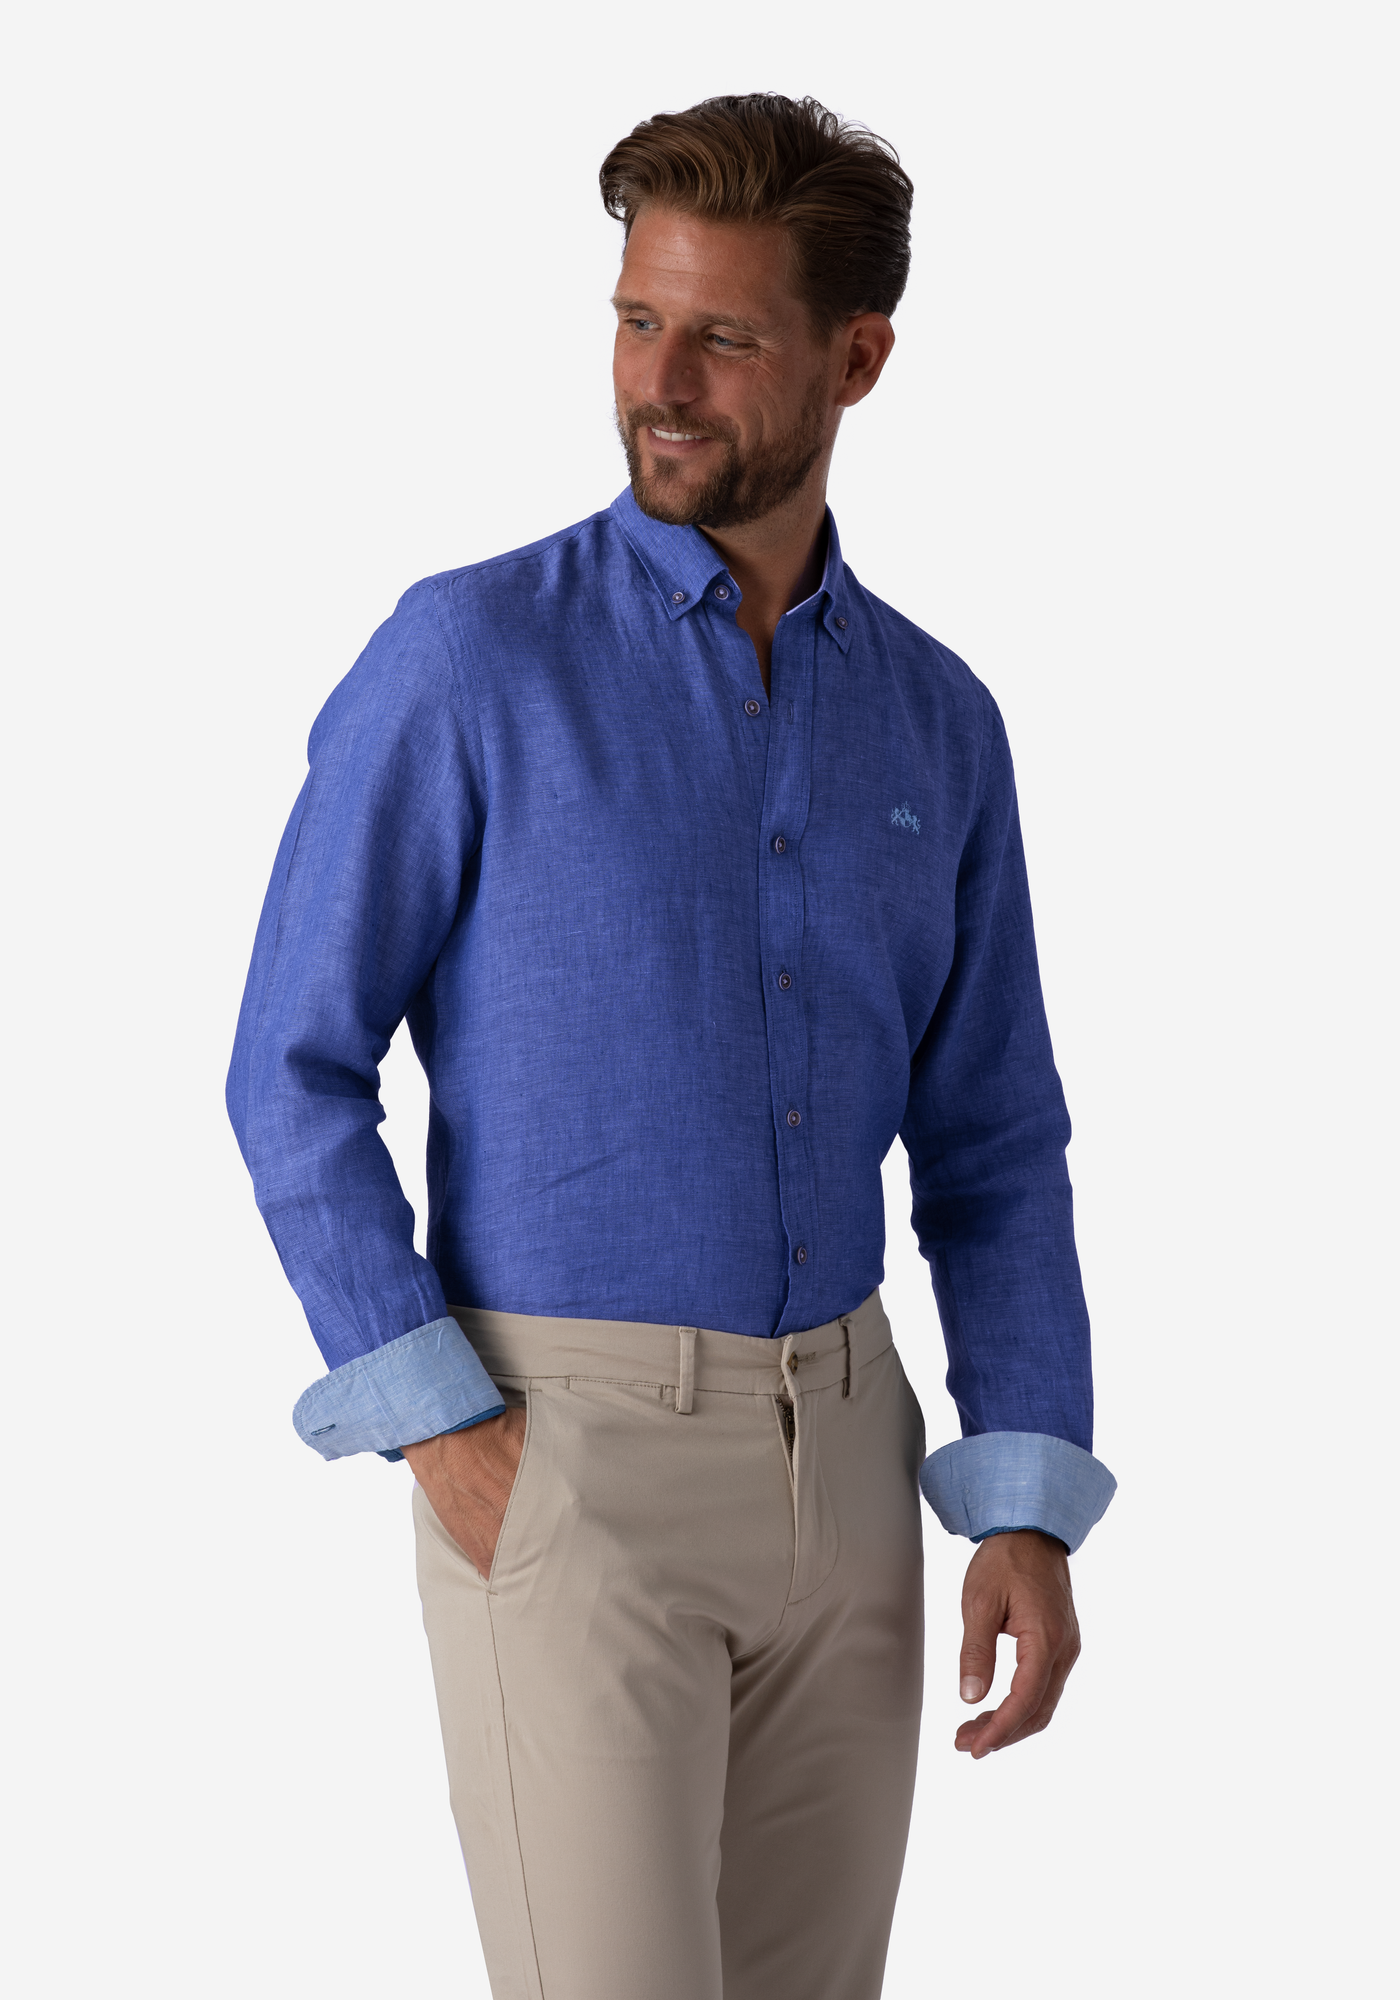 Delft Blue Belgian Linen Shirt